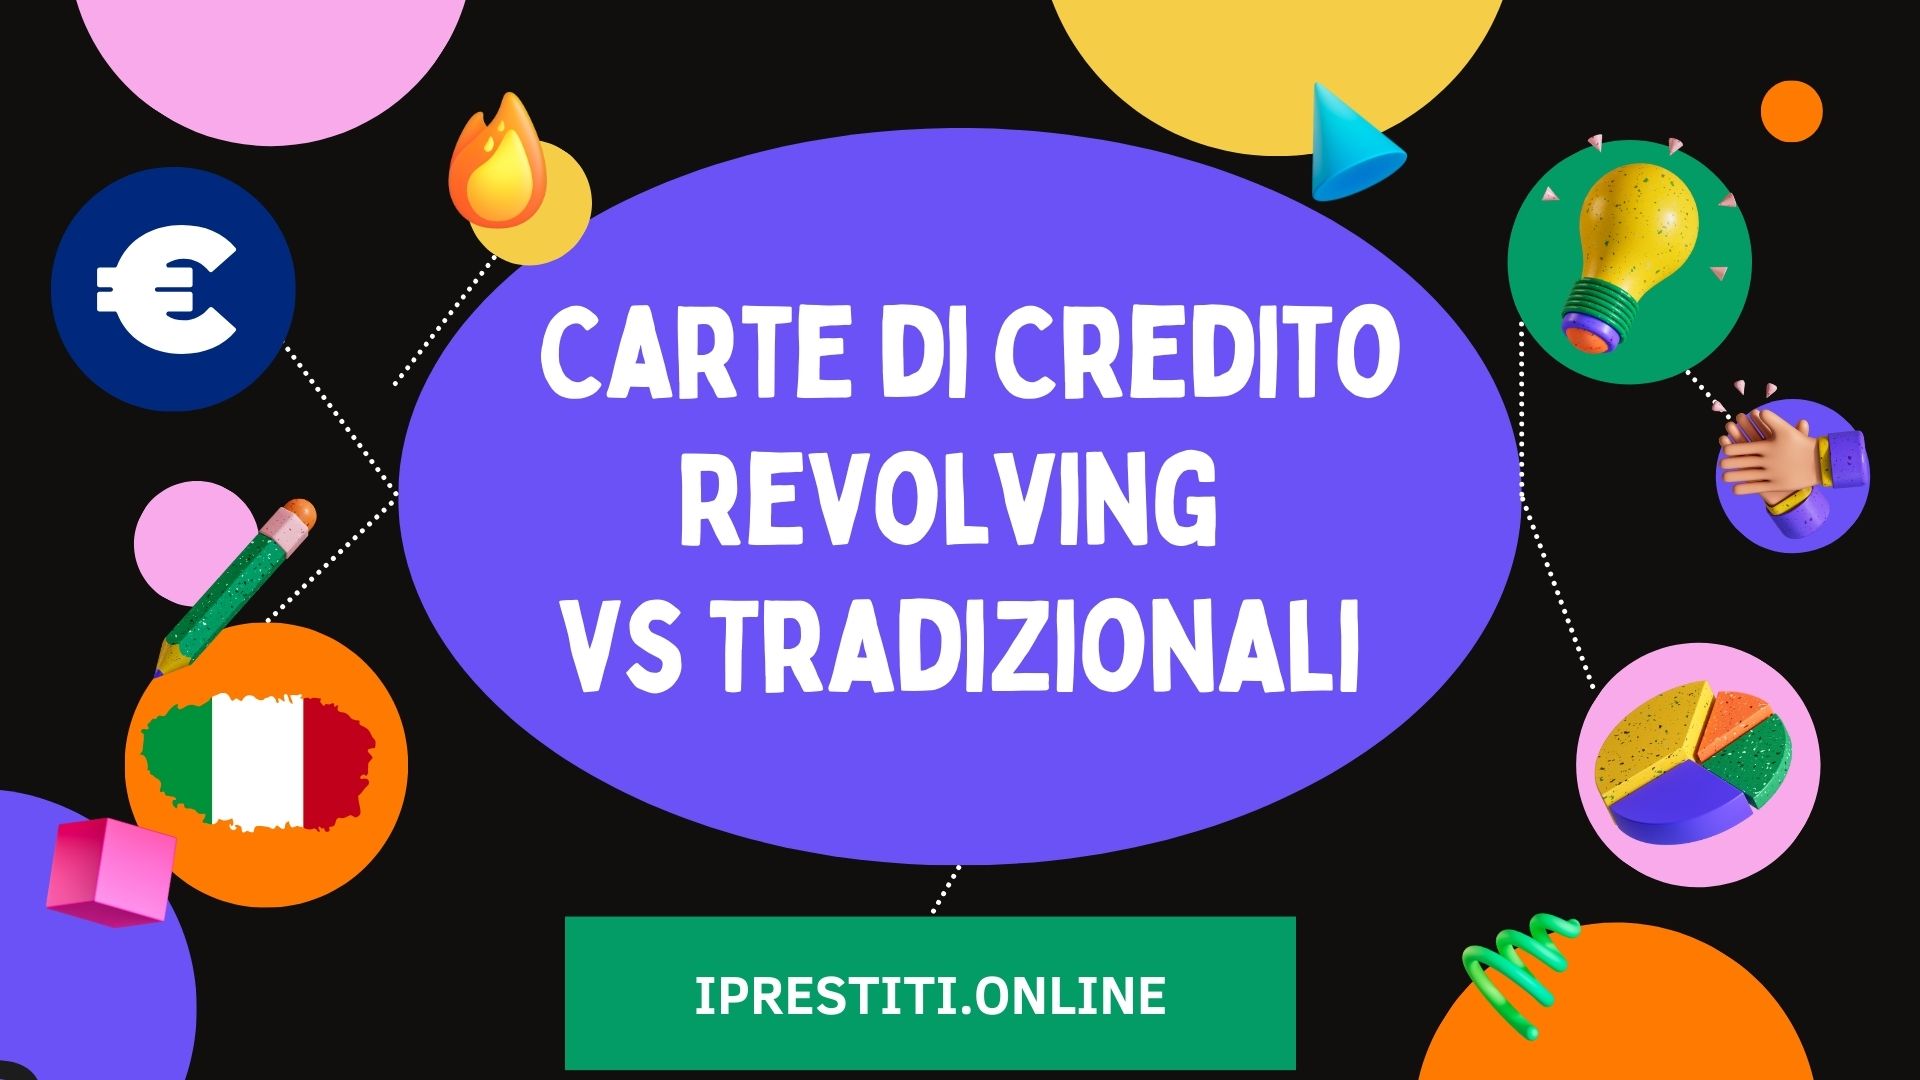 Carte di Credito Revolving e Carte di Credito Tradizionali